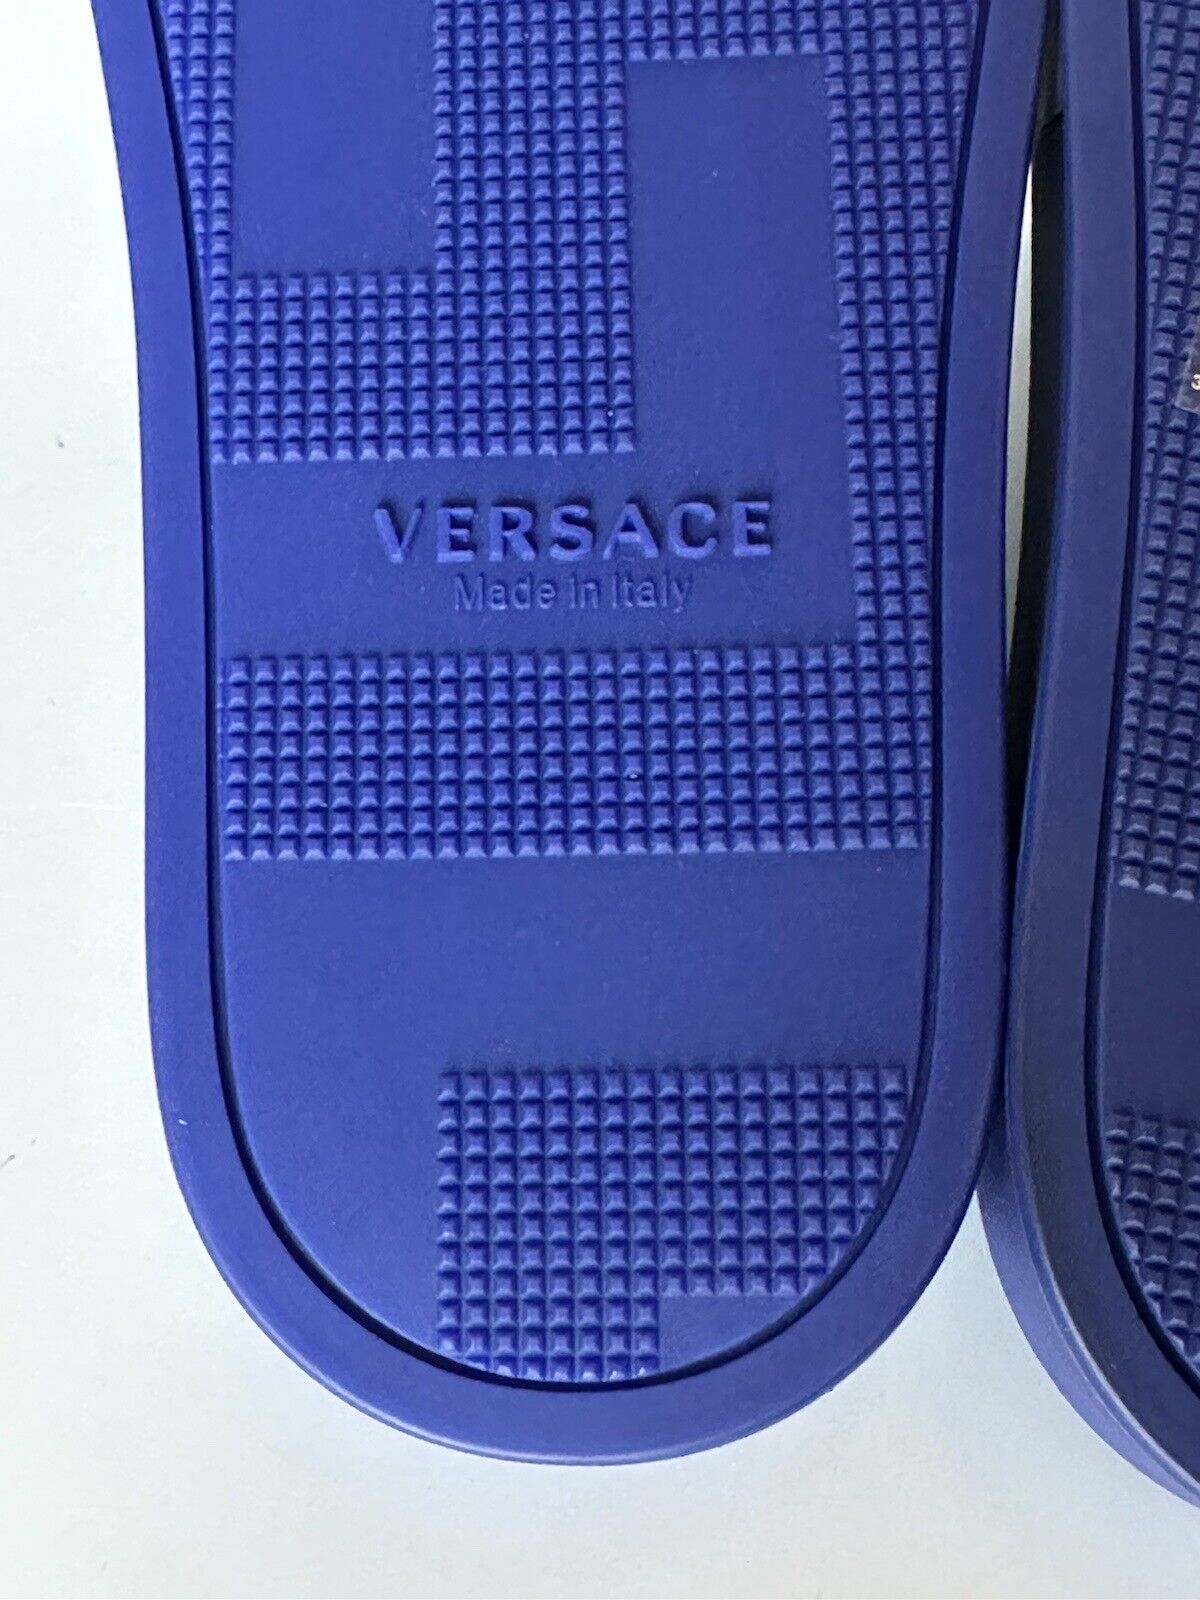 NIB Versace Medusa Head Slides Sandals Lapis 10 US (43 Euro) 1001184 Italy